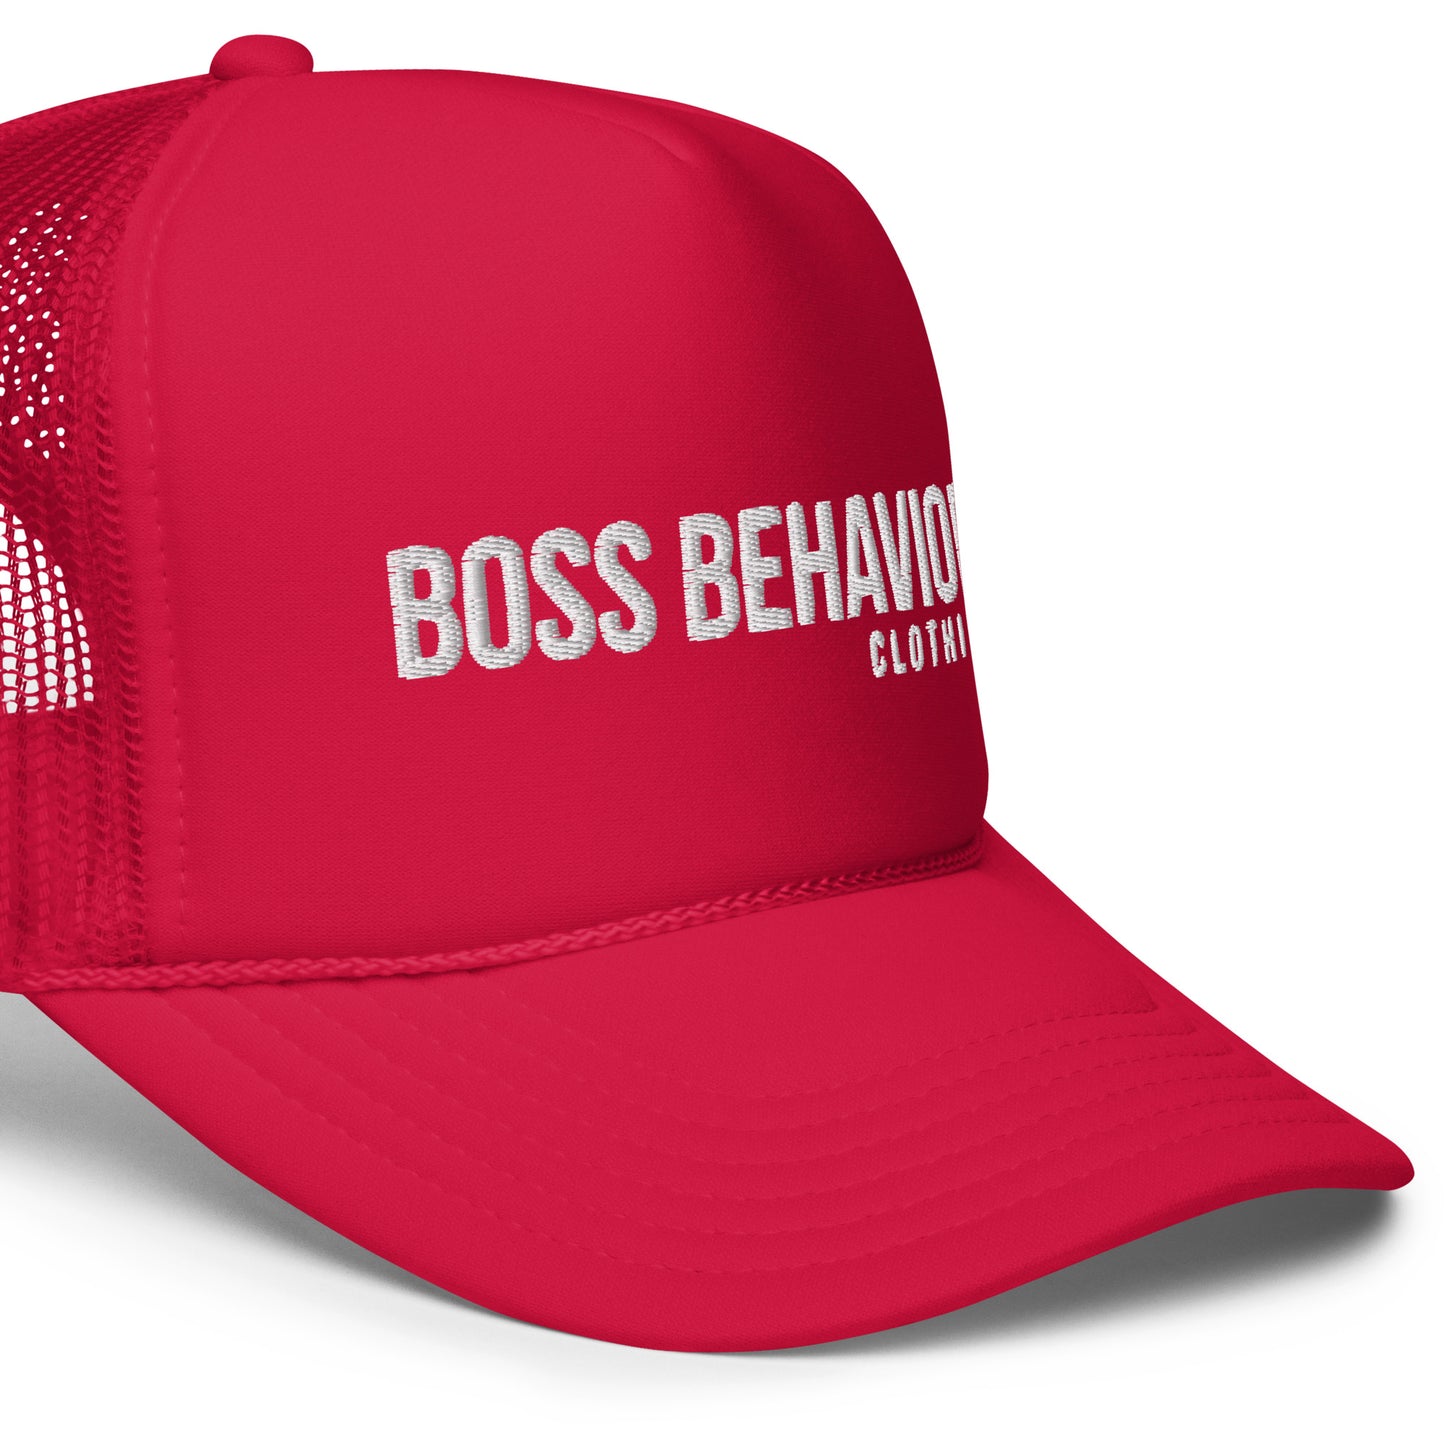 Boss Behavior Foam trucker hat